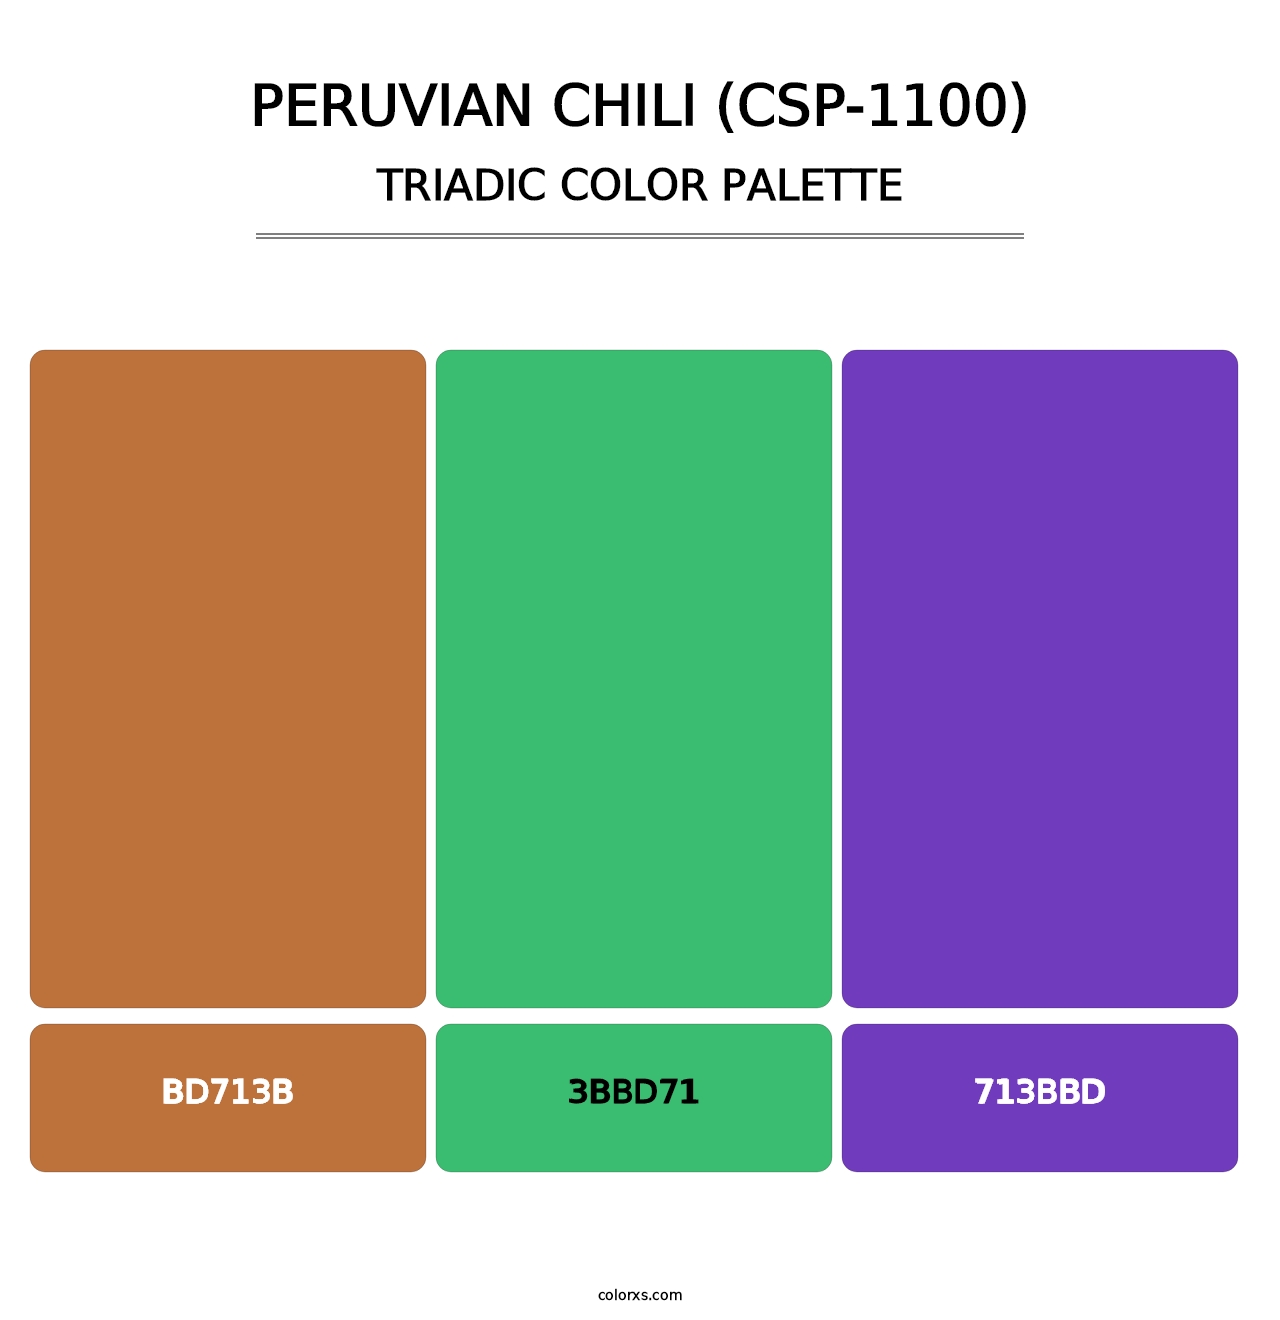 Peruvian Chili (CSP-1100) - Triadic Color Palette